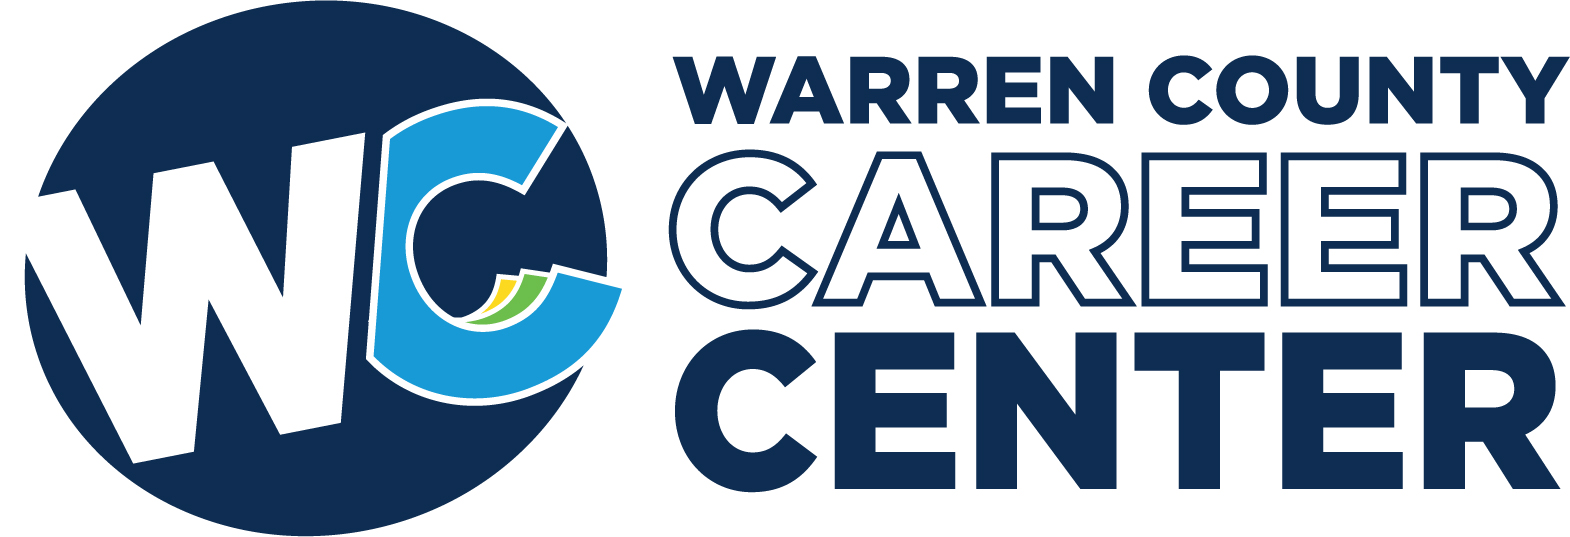 warren county career center